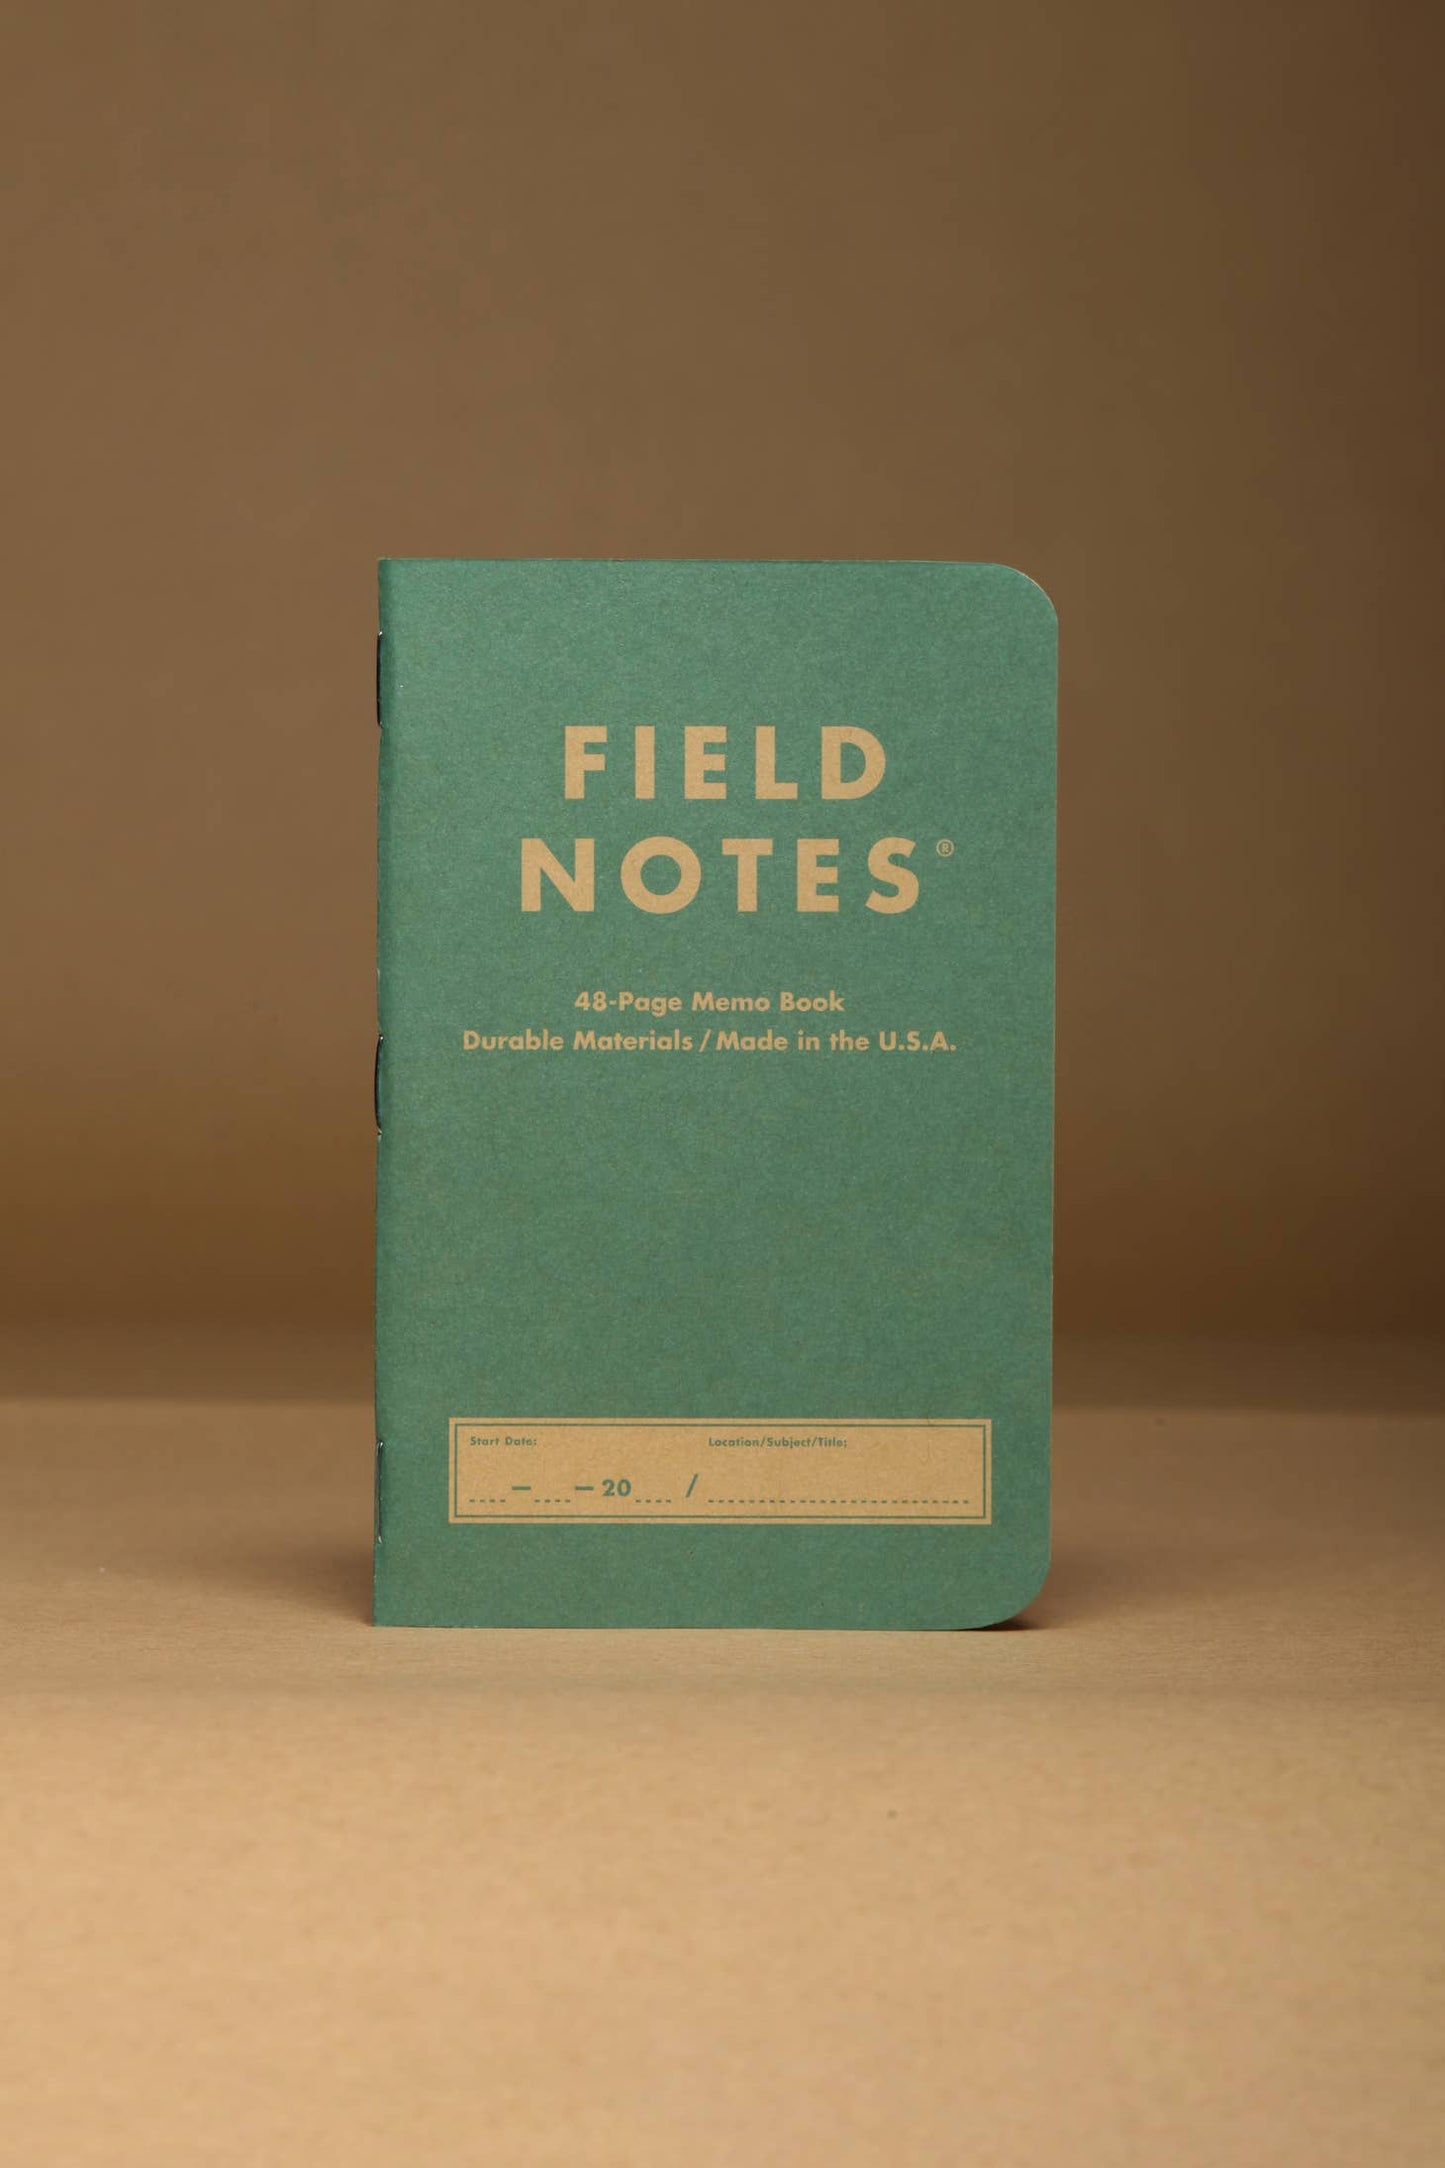 Field Notes Kraft Plus 2 Pack